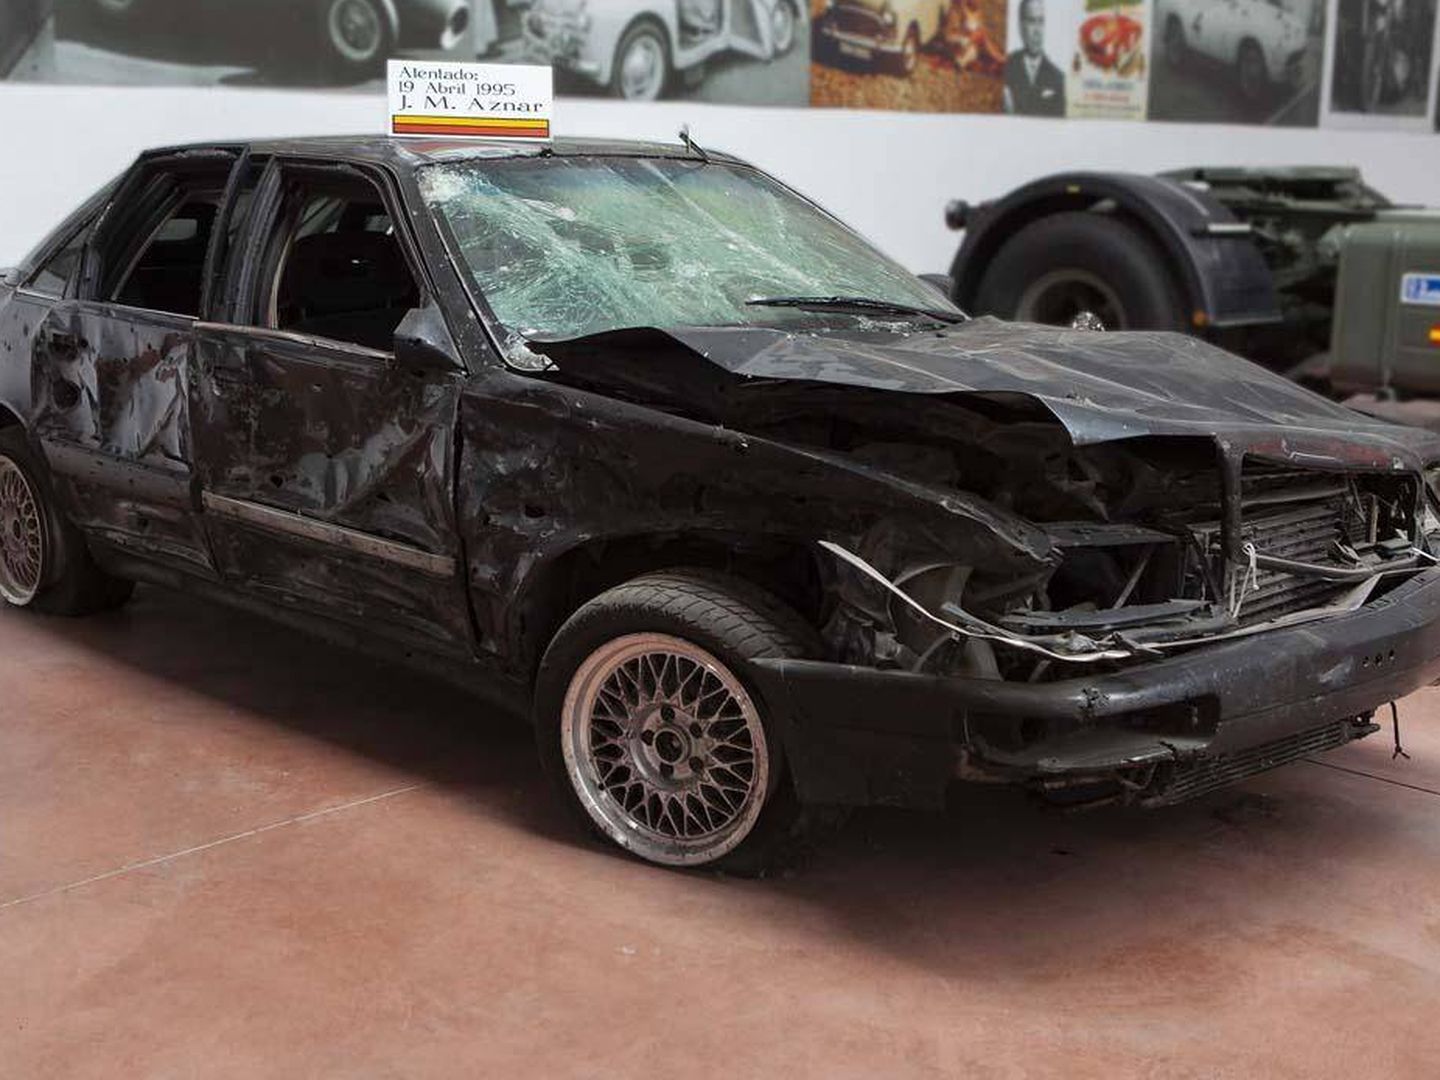 Así quedó el Audi tras el atentado. (IAG Auction)